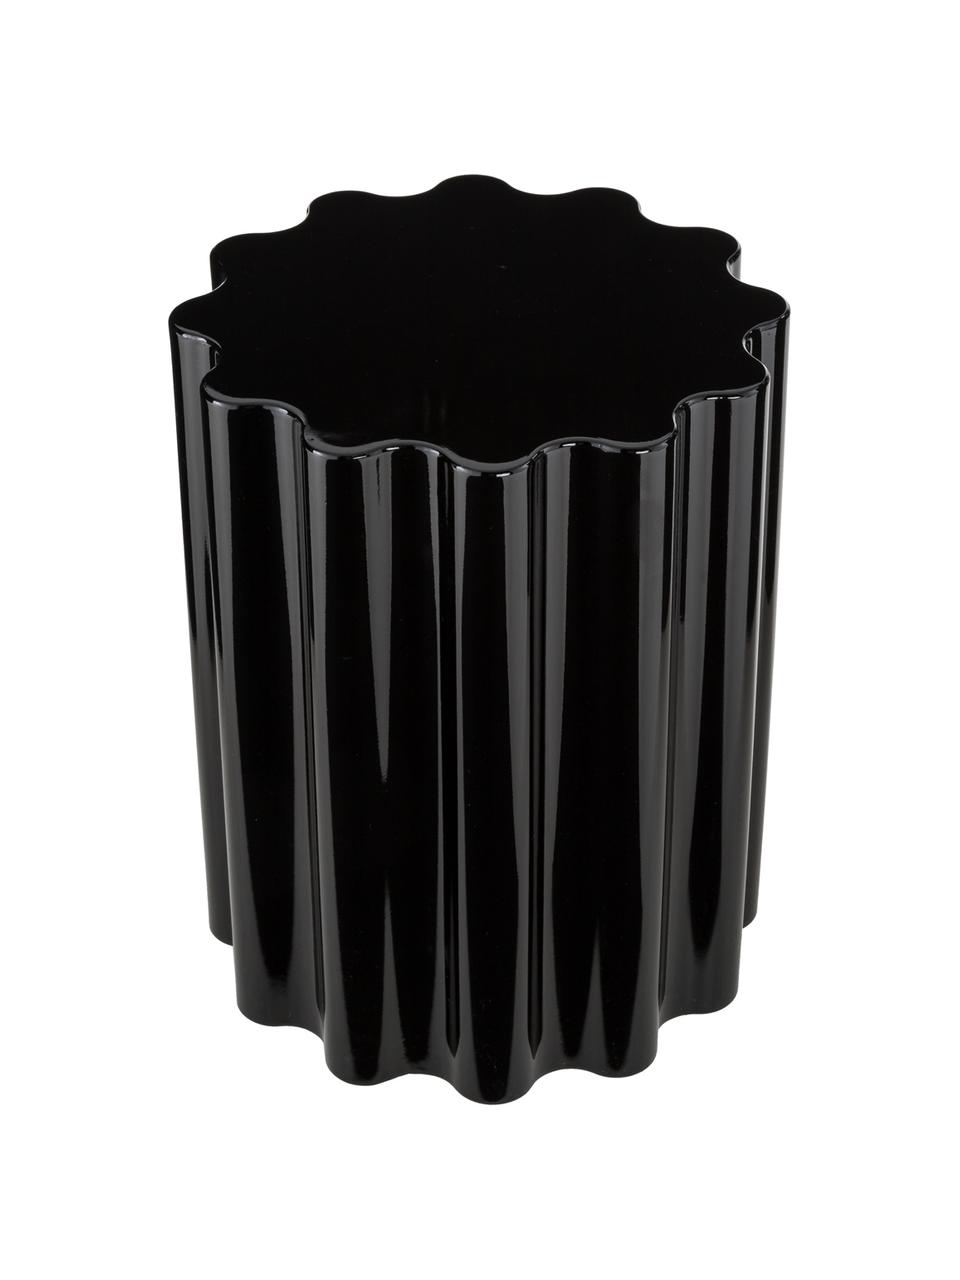 Stołek/stolik pomocniczy Colonna, Tworzywo sztuczne, pigmentowane, termoplastyczne, Czarny, błyszczący, Ø 35 x 46 cm